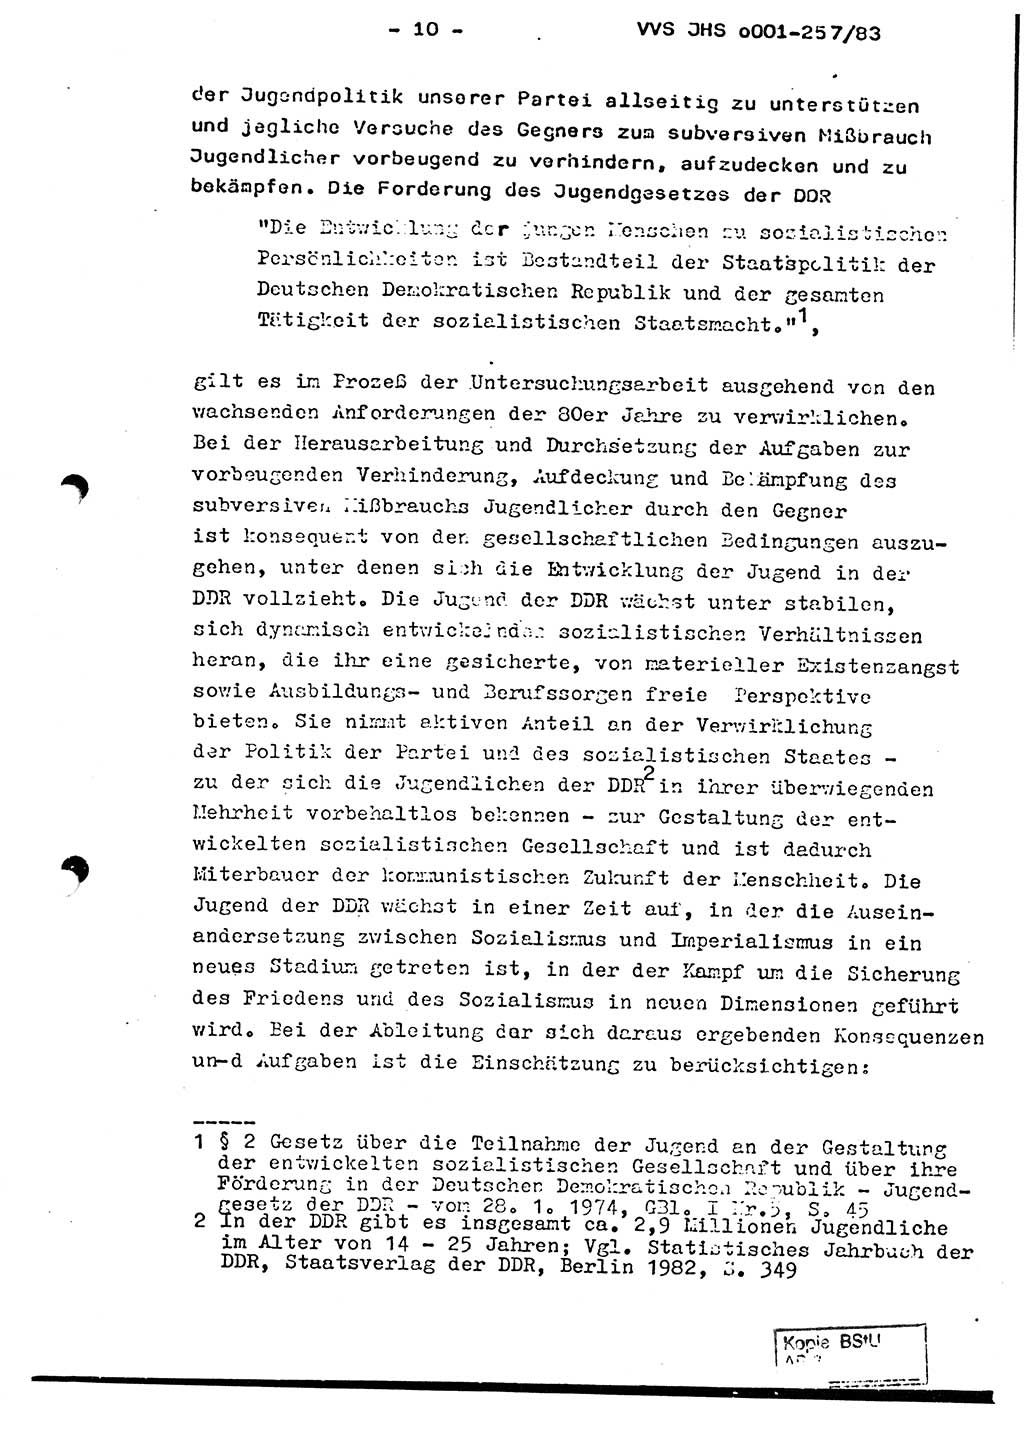 Dissertation, Oberst Helmut Lubas (BV Mdg.), Oberstleutnant Manfred Eschberger (HA IX), Oberleutnant Hans-Jürgen Ludwig (JHS), Ministerium für Staatssicherheit (MfS) [Deutsche Demokratische Republik (DDR)], Juristische Hochschule (JHS), Vertrauliche Verschlußsache (VVS) o001-257/83, Potsdam 1983, Seite 10 (Diss. MfS DDR JHS VVS o001-257/83 1983, S. 10)